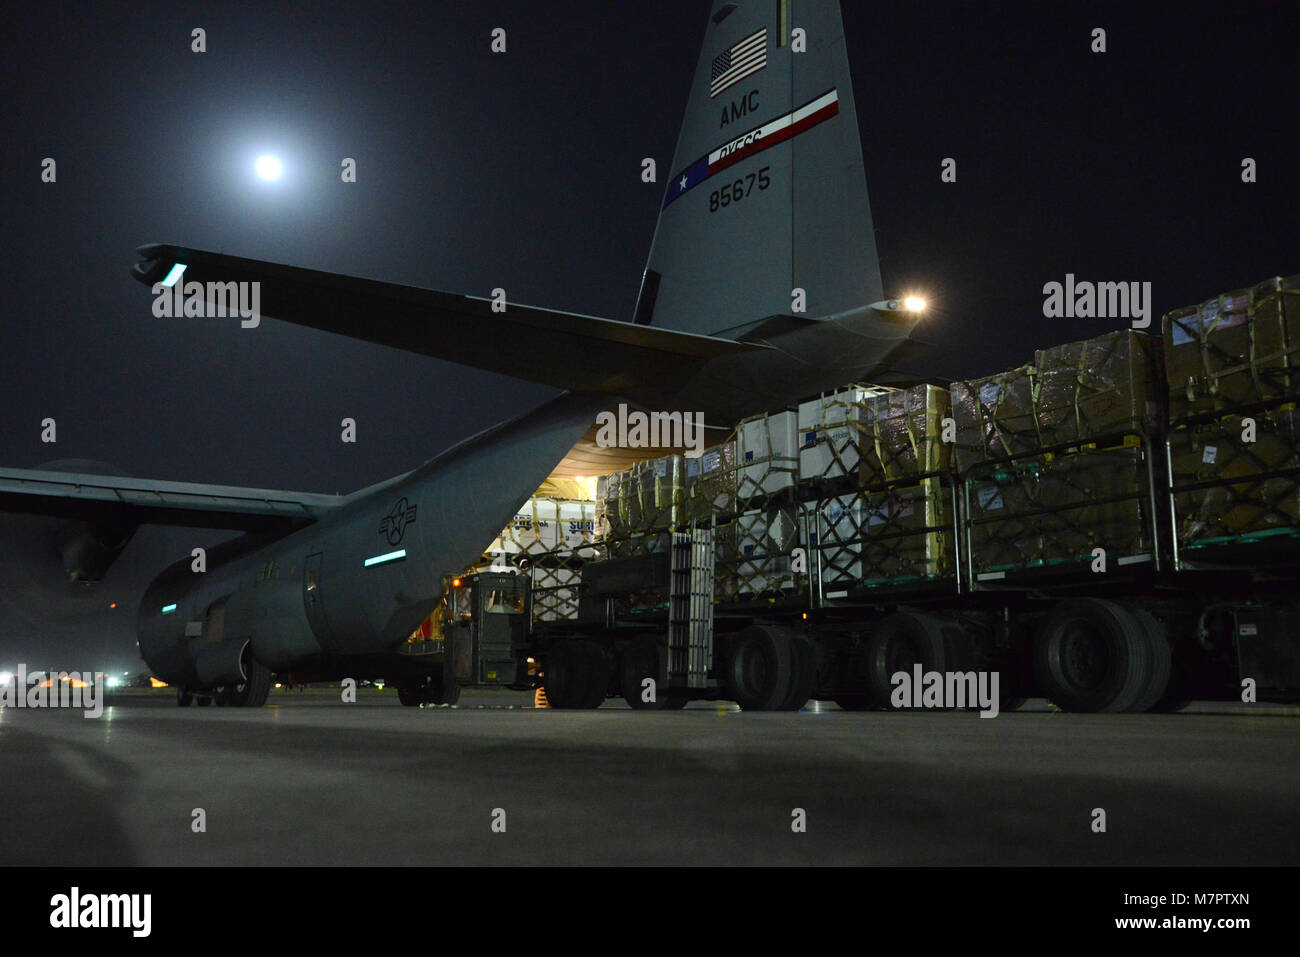 Aeródromo de Bagram, Afganistán - un avión C-130 J Super Hercules está cargado con suministros de alimentos en el aeródromo de Bagram, Afganistán, 14 de junio de 2014. Los aviadores asignados al puerto aéreo escuadrilla expedicionaria 455preparado más de 18.000 libras de alimentos para su entrega a las bases de operaciones de avanzada, 14 de junio de 2014. Los perecibles tuvo que ser entregado dentro de las tres horas después de ser retirado del congelador. (Ee.Uu. Foto de la fuerza aérea por el Sargento Primero. Cohen A. Young/liberado) 455a ala expedicionaria aérea aeródromo de Bagram, Afganistán Foto de stock